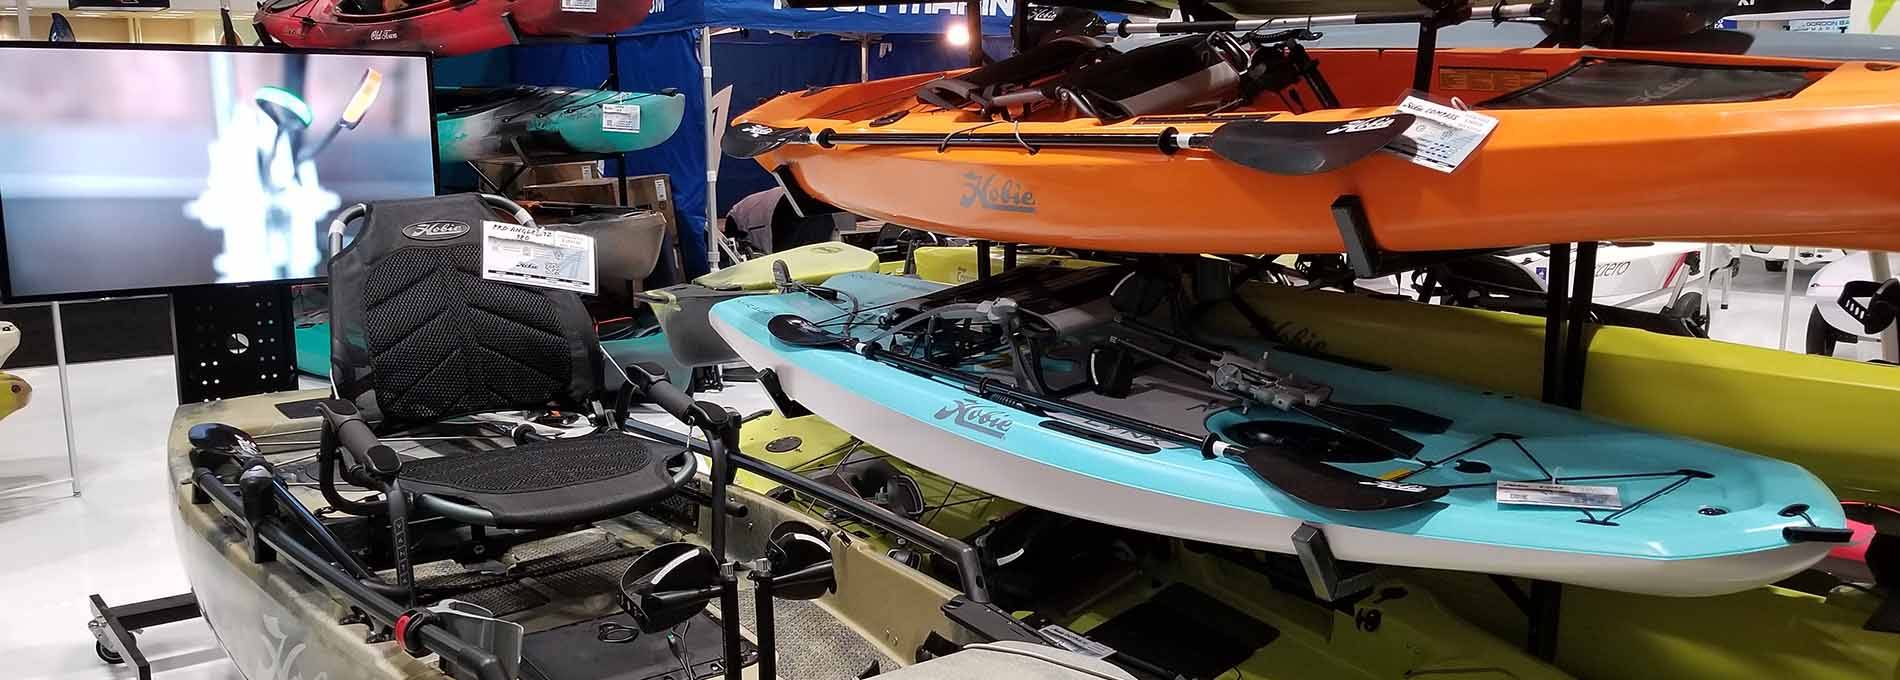 7151 – Flint Bow Motor Mount Kit, Kayaks, Fishing, Hunting